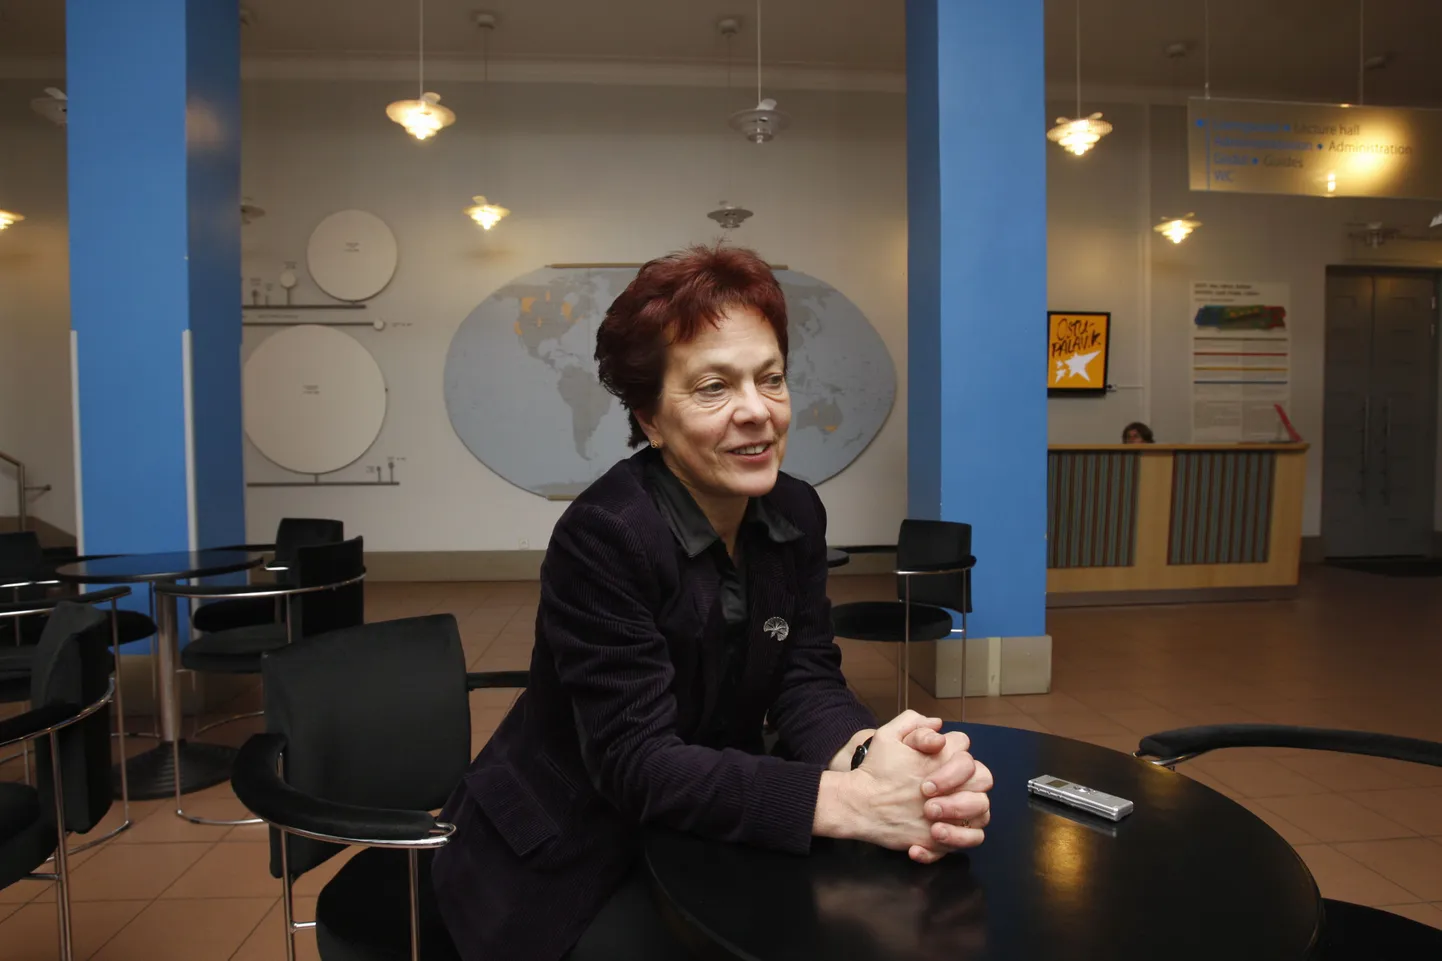 Eesti Rahva Muuseumi direktor Krista Aru avalikustas täna, et lahkub 9. novembril ametist.